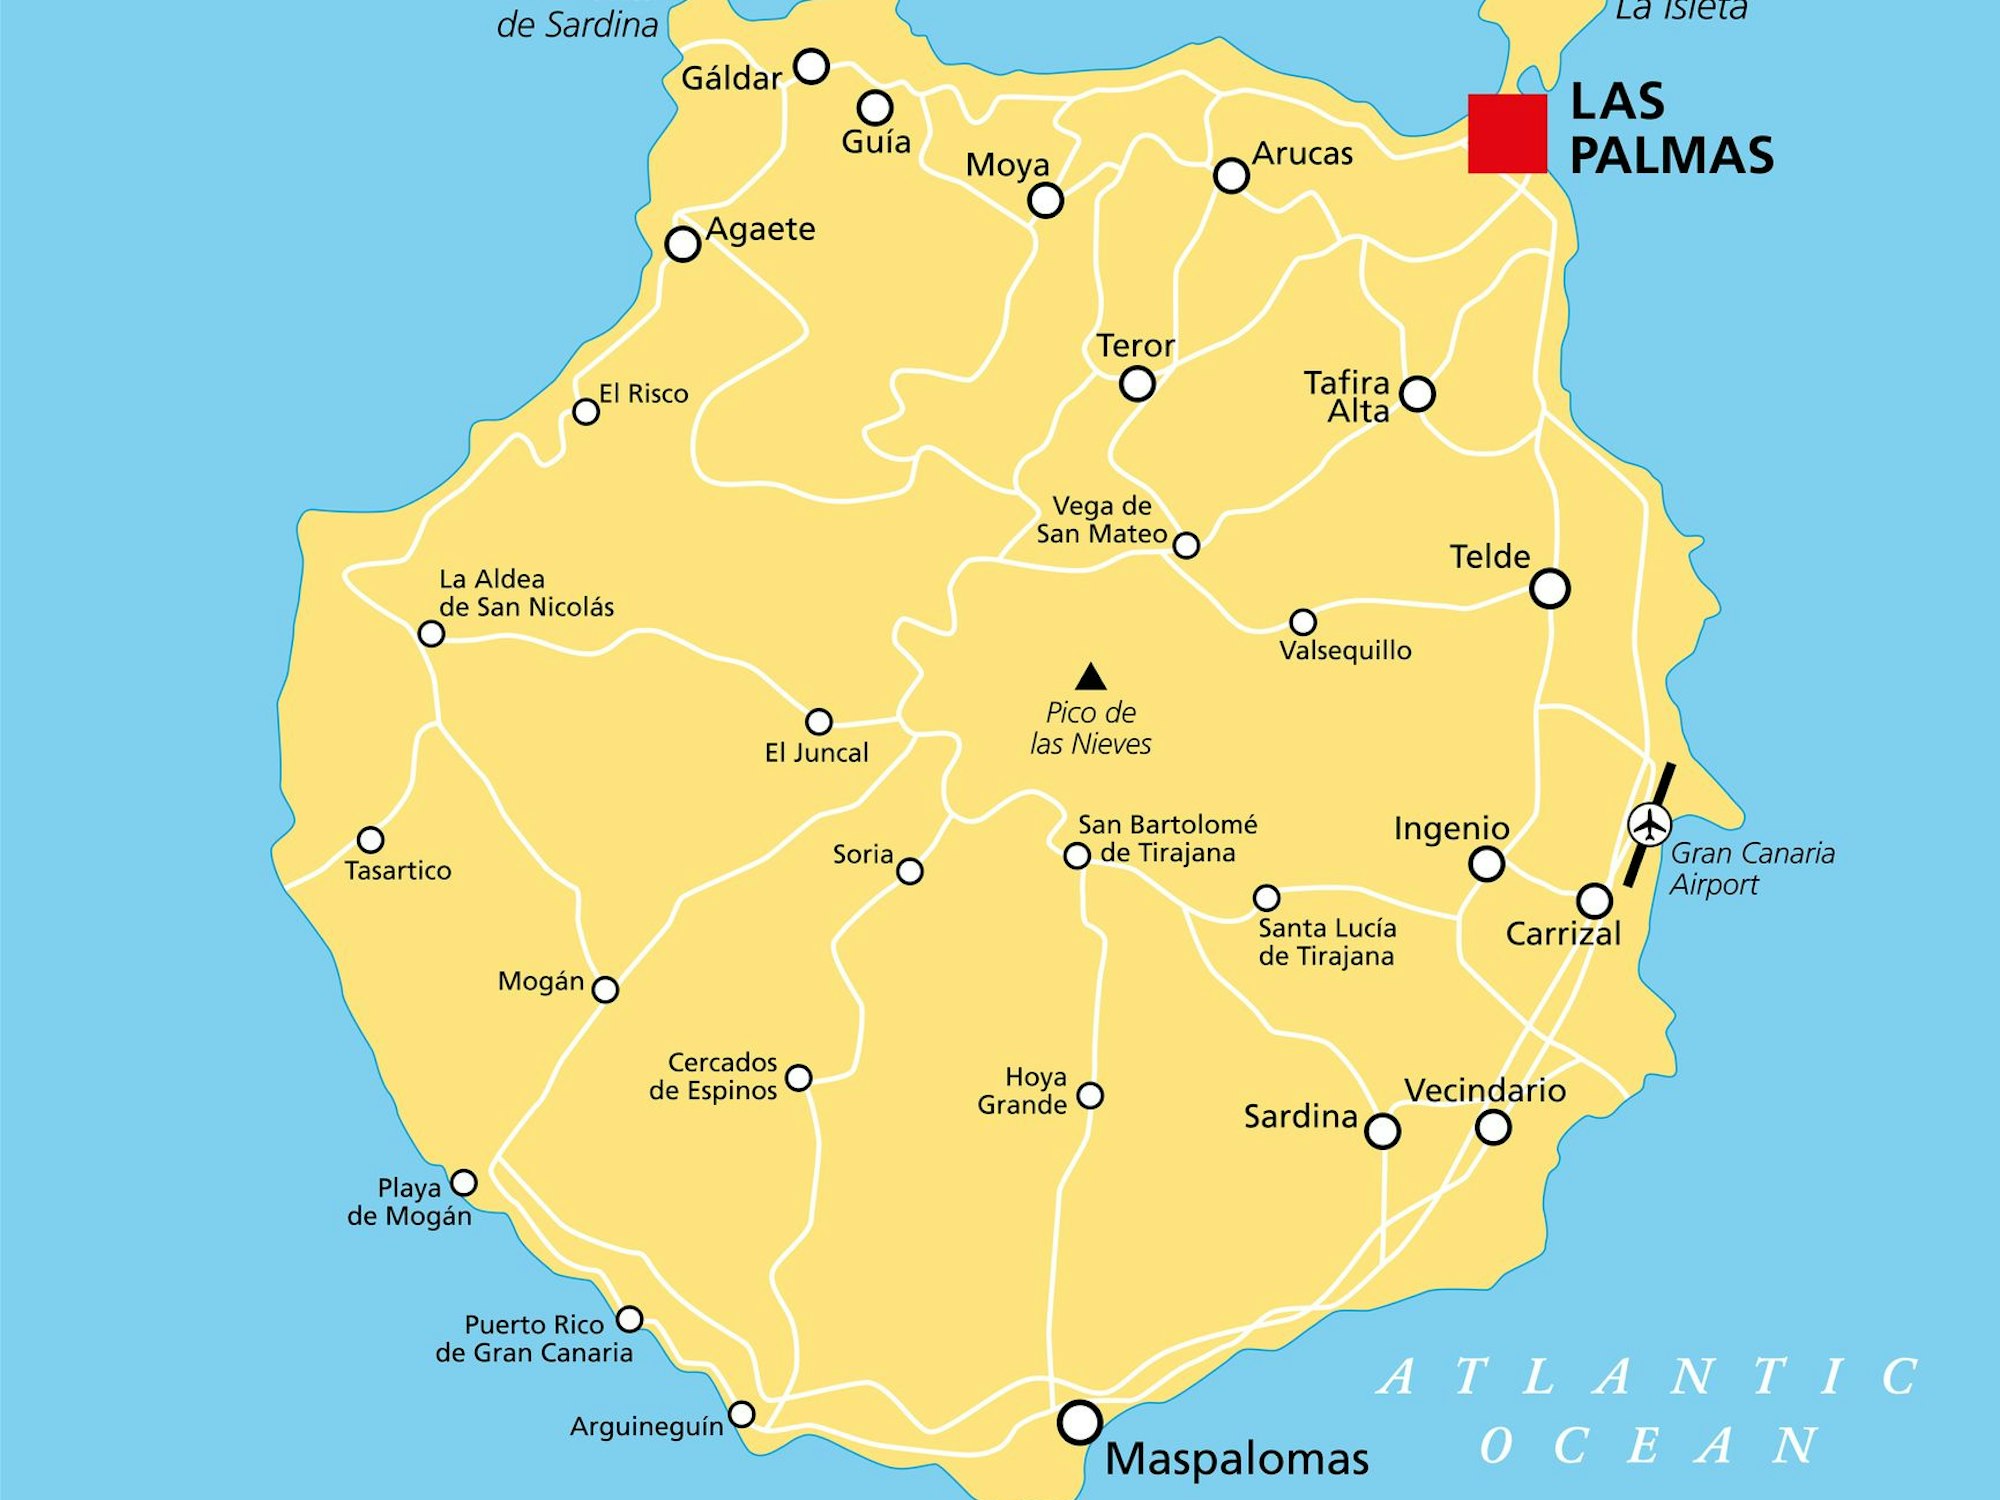 Karte von Gran Canaria mit ihrer Hauptstadt Las Palmas und anderen wichtigen Städten.